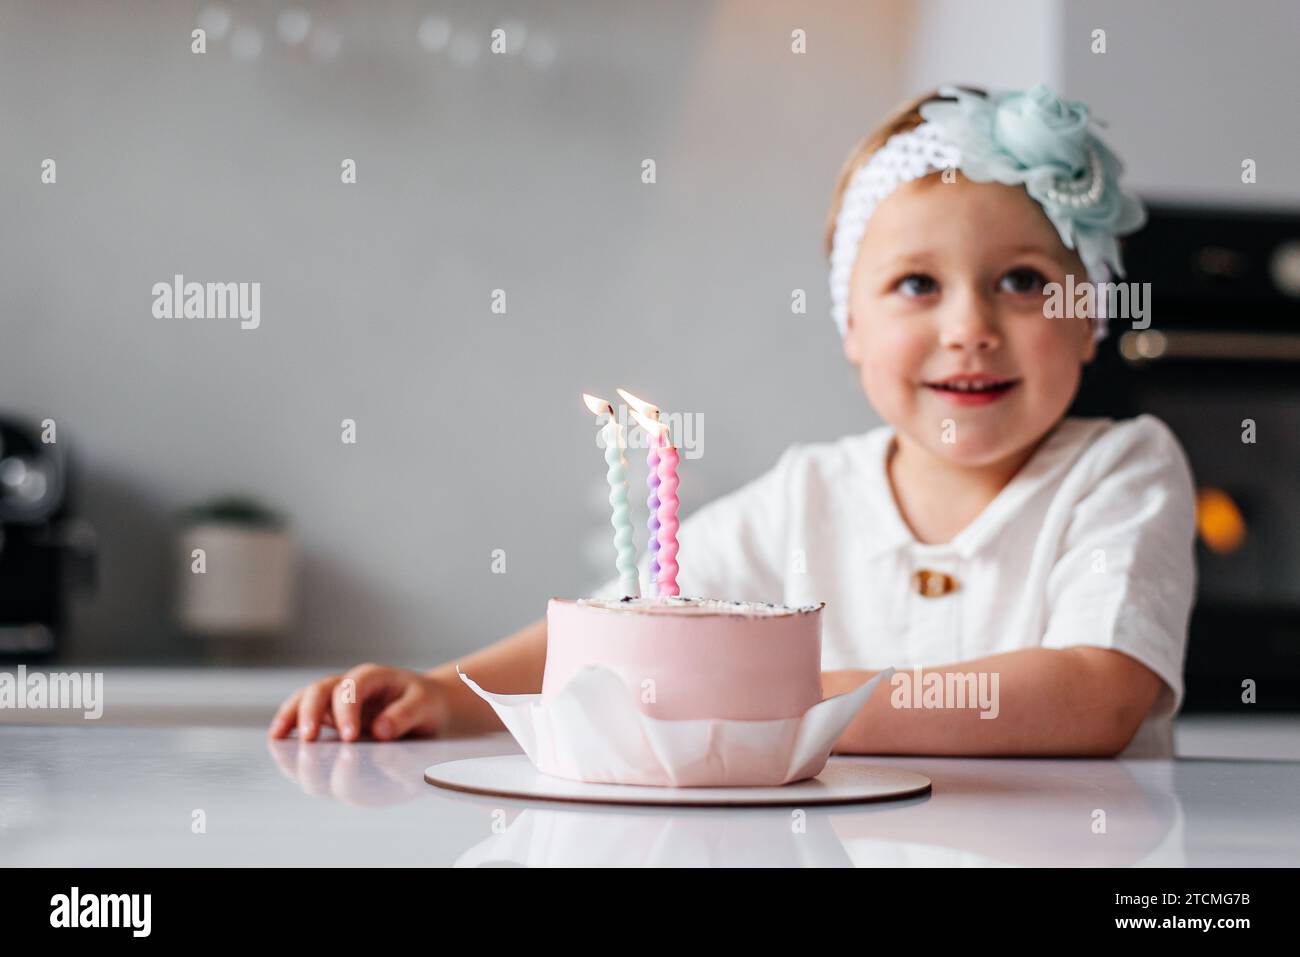 feliz cumpleaños niña de 2 años con vestido rosa. pastel blanco con velas y  rosas. Decoración de cumpleaños con globos de color blanco y rosa y  Fotografía de stock - Alamy